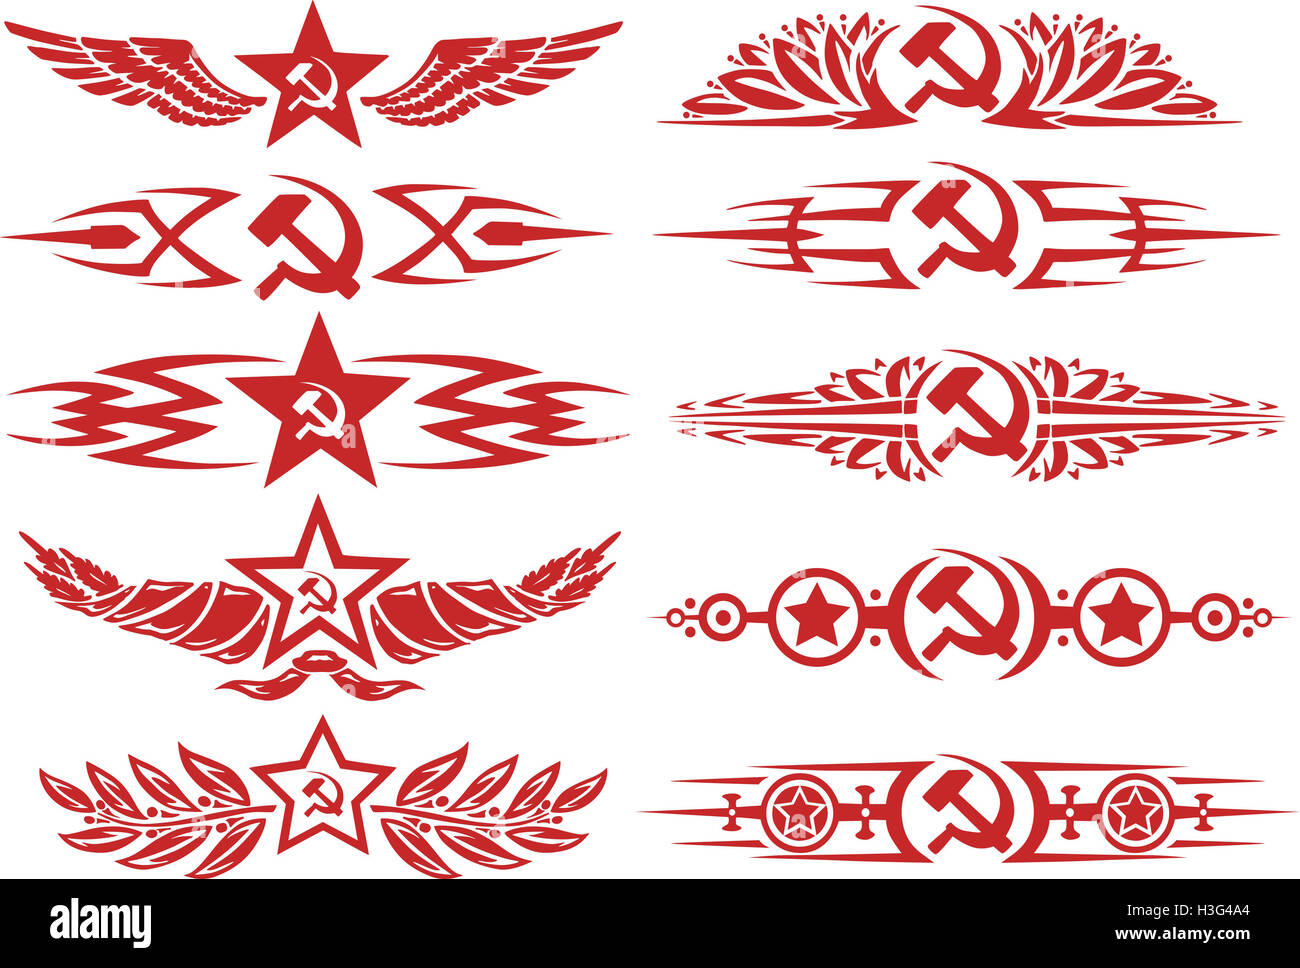 Satz von rot sowjetischen dekorativen typografische Vignetten und Tattoos  mit Sternen, Sichel und Hammer und andere sowjetische Symbole  Stockfotografie - Alamy